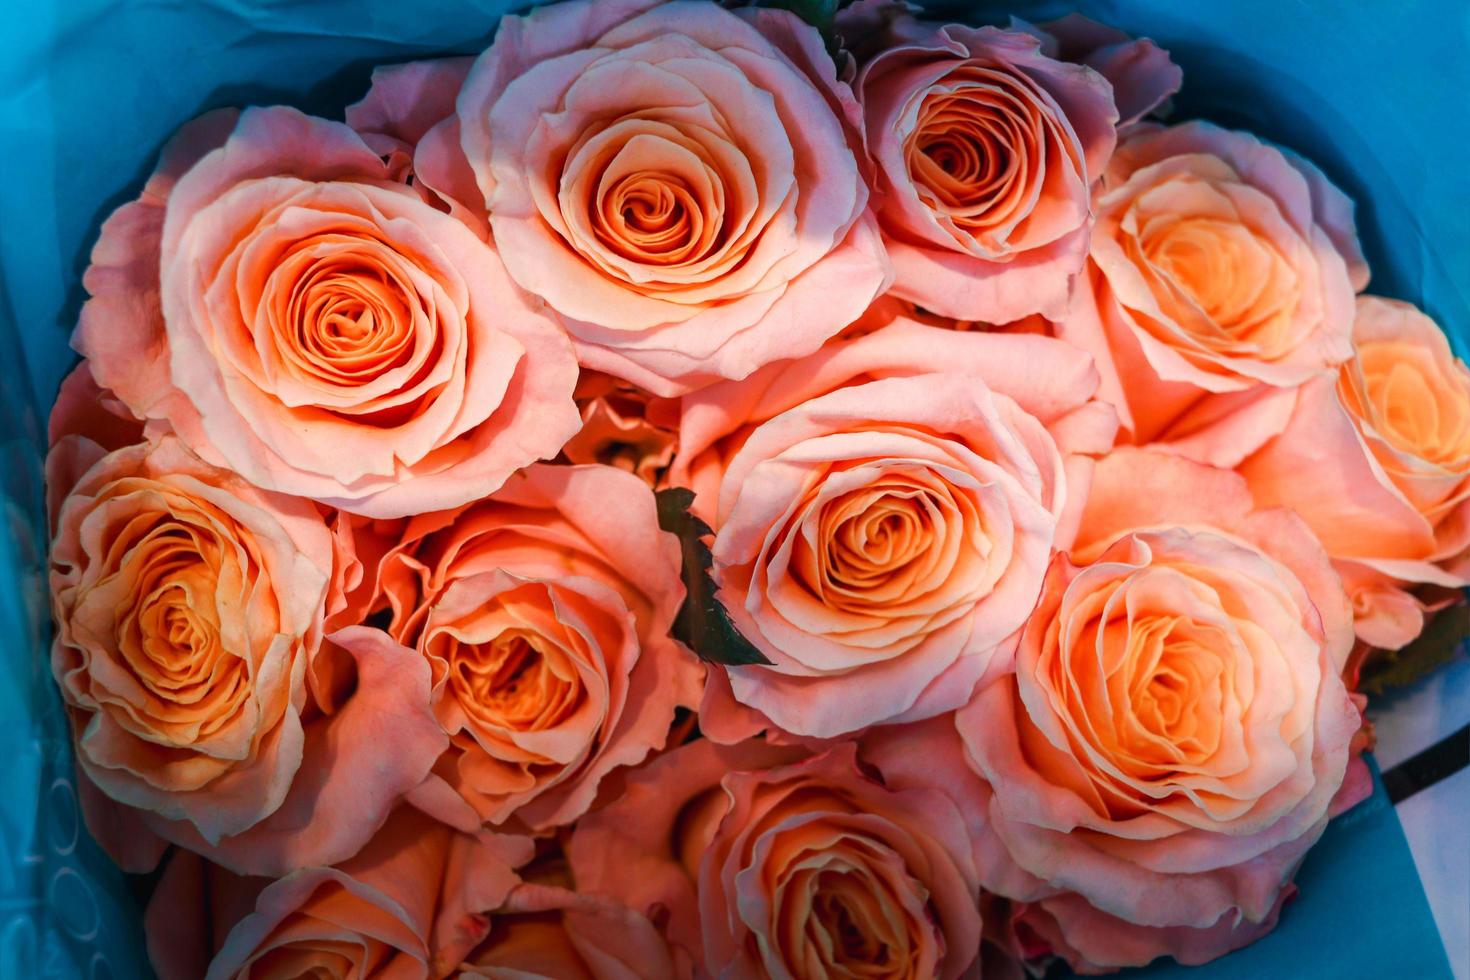 rosa linda rosa embrulhada em papel à venda no mercado de flores, presente de presente no dia dos namorados. foto